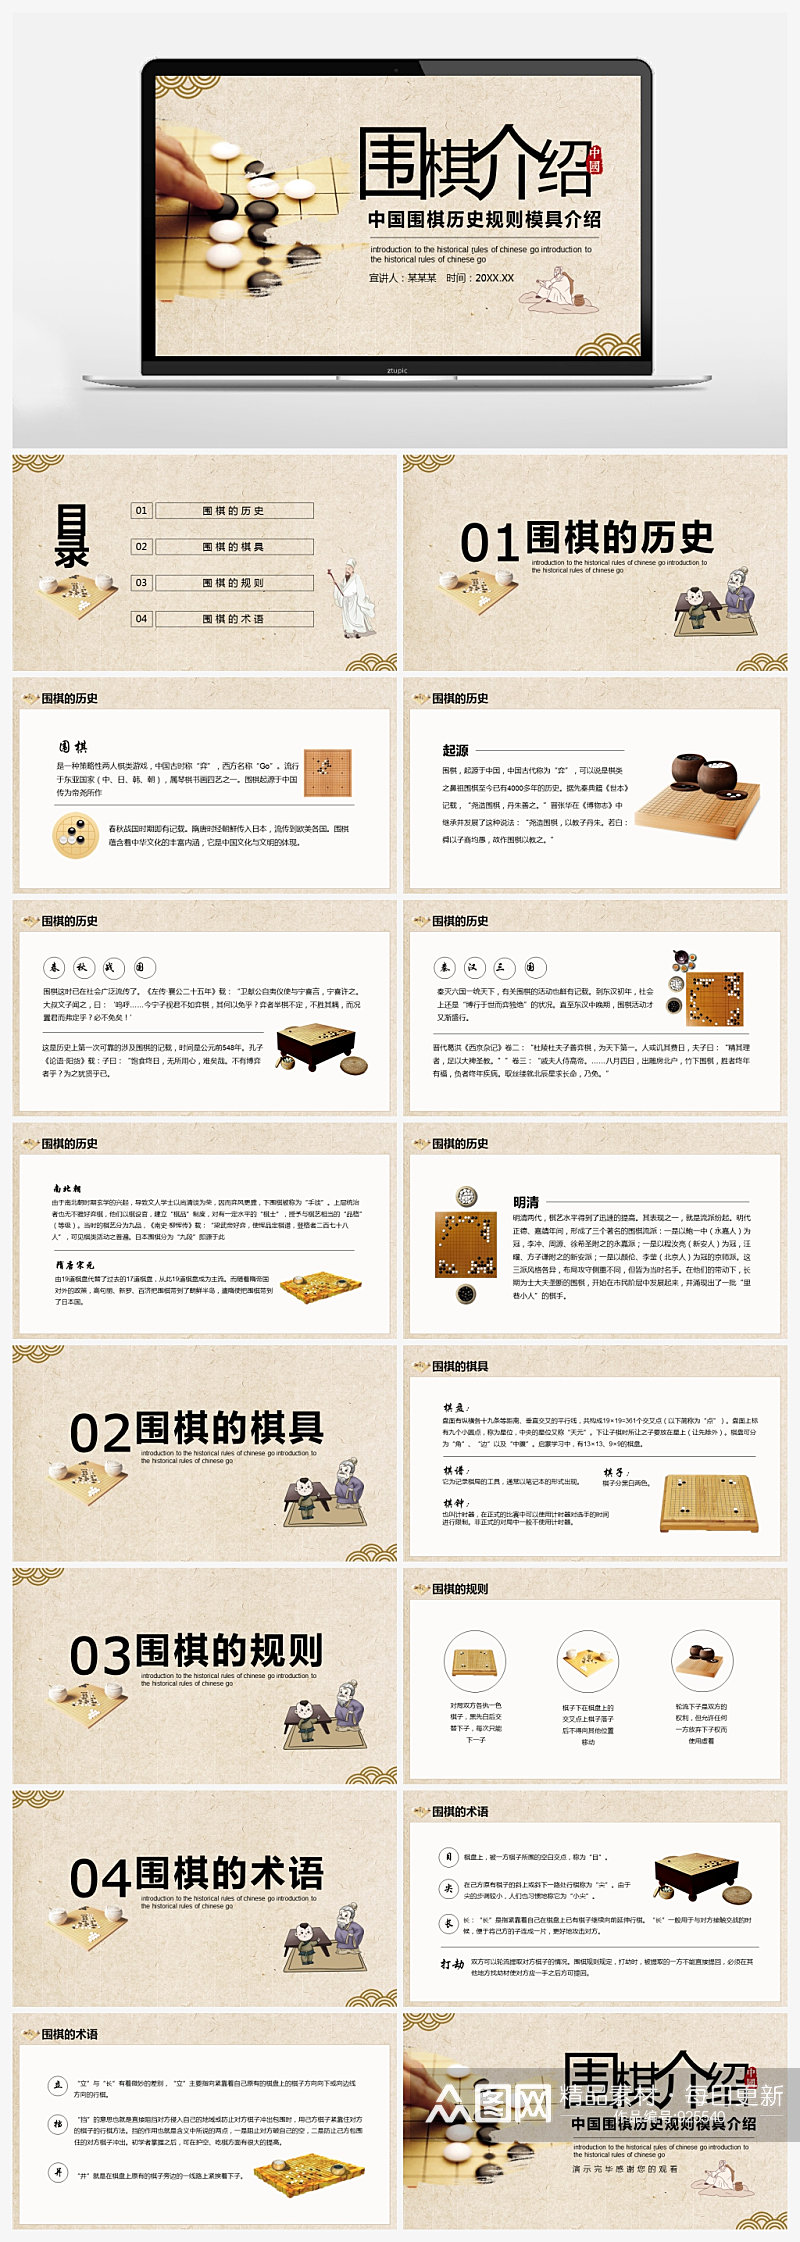 简约中国风中国围棋历史规则模具介绍PPT素材